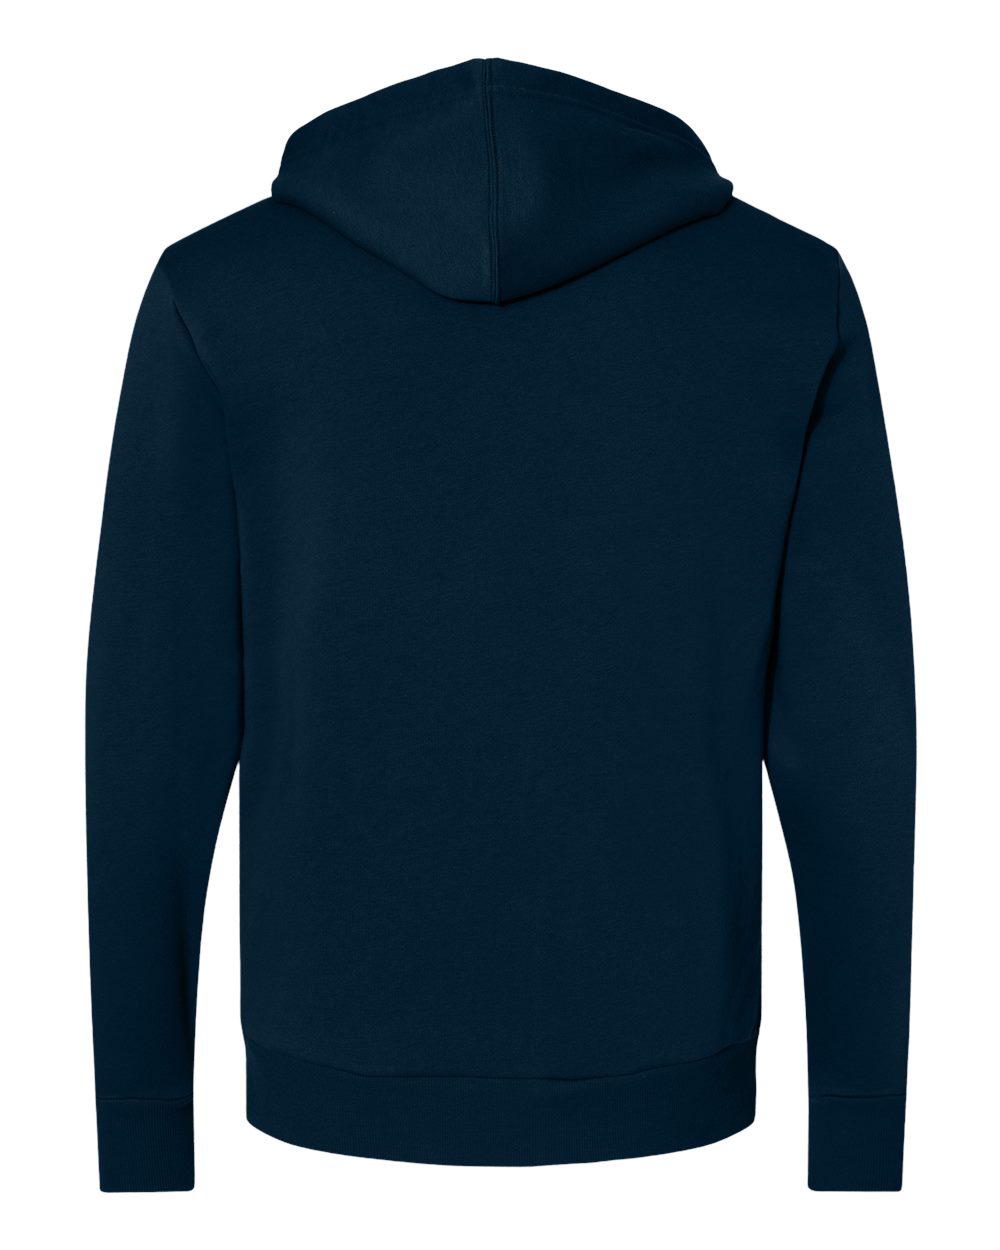 Alternative Mens Eco-Cozy Fleece Zip Hoodie Sweatshirt 8805PF up to 3XL ...